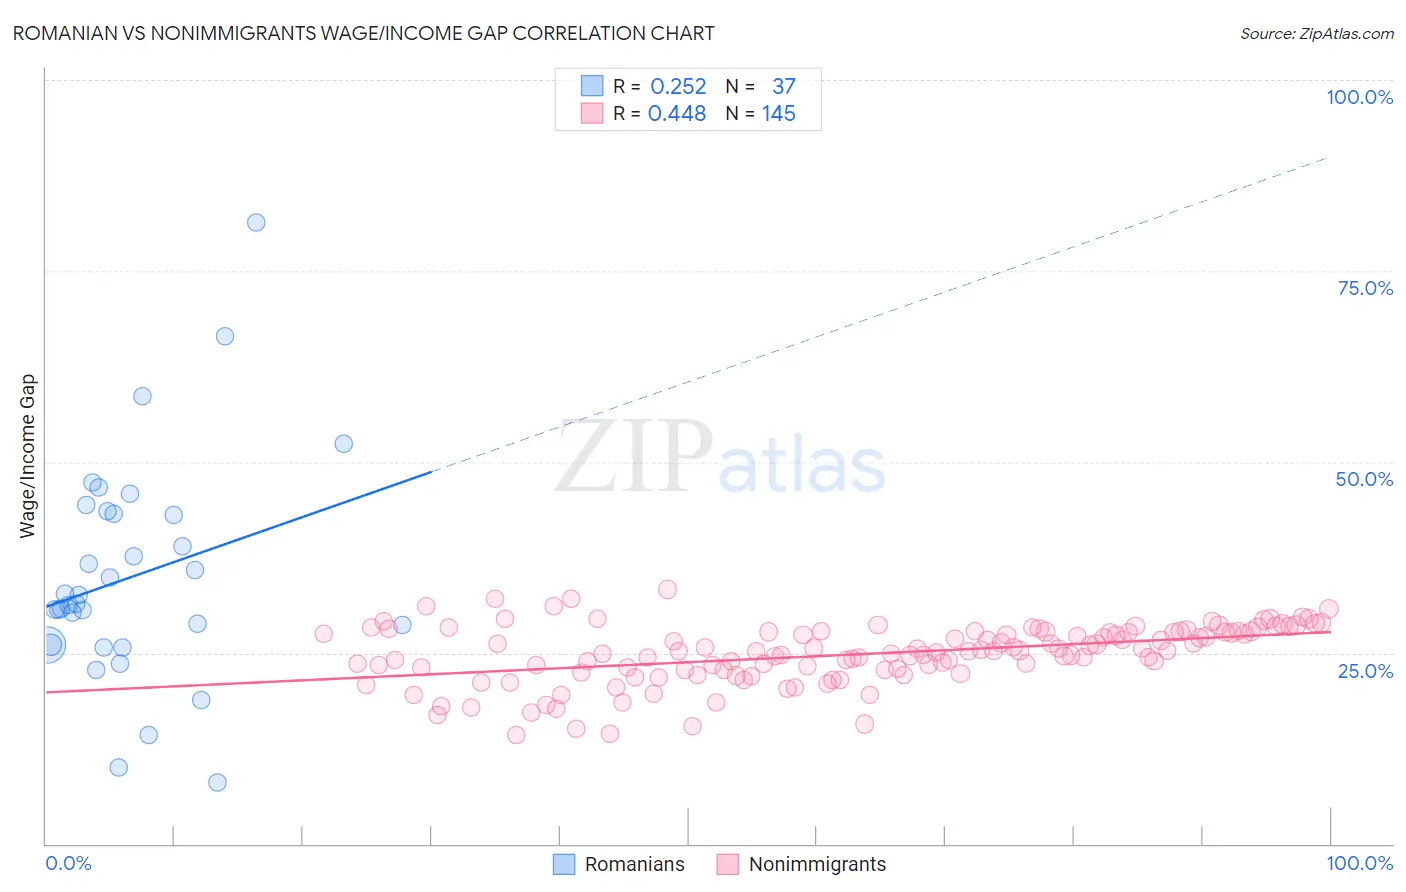 Romanian vs Nonimmigrants Wage/Income Gap